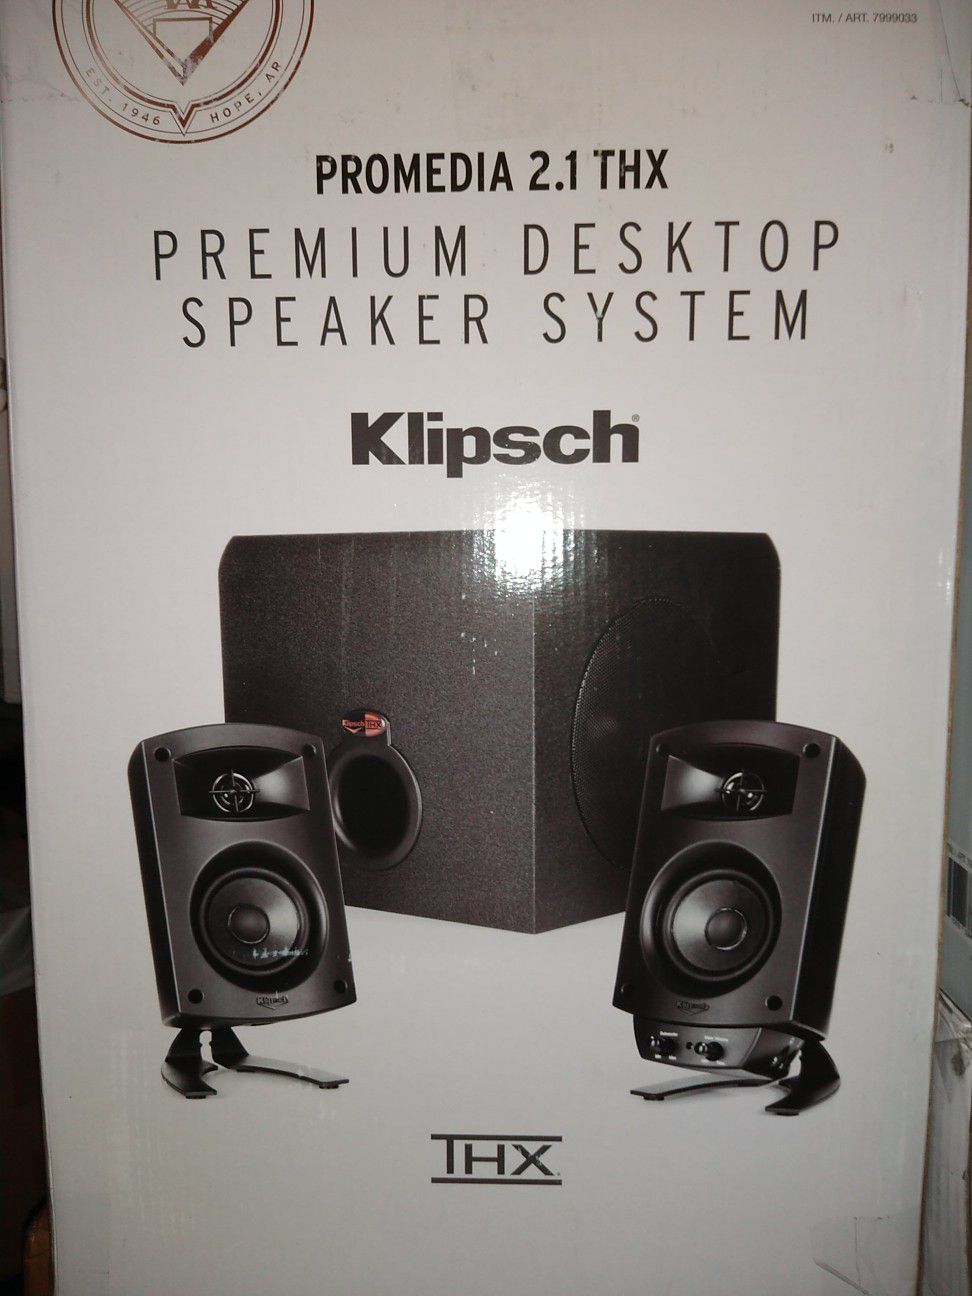 Klipsch Pro Media 2.1 desktop speakers